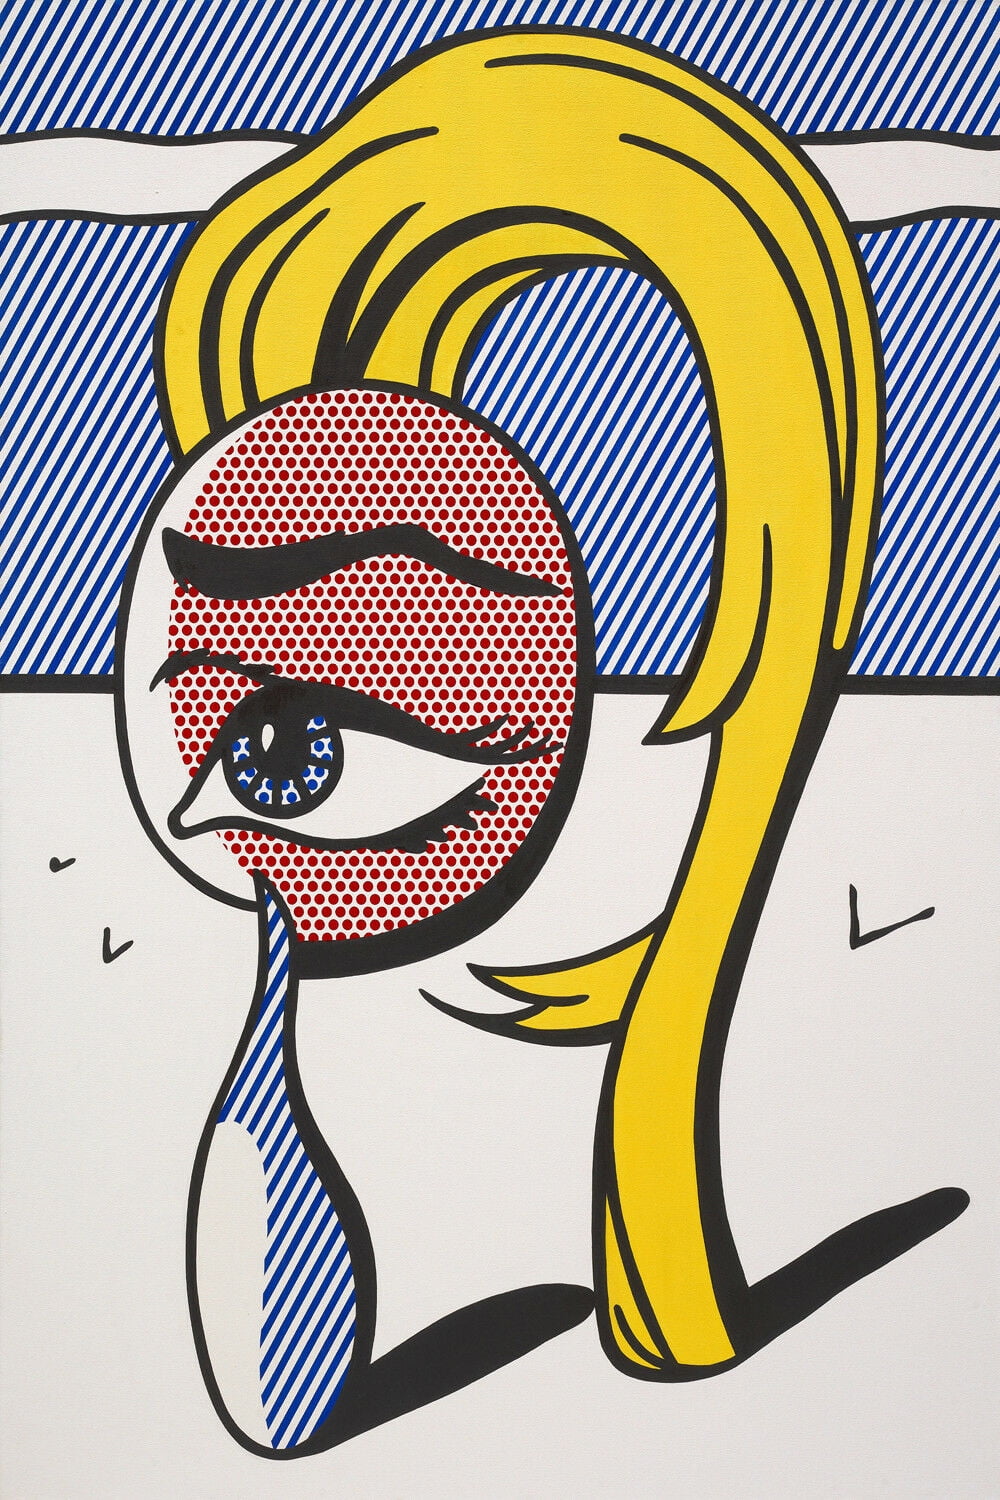 Roy Lichtenstein Art - CANVAS OR PRINT WALL ART - Walmart.com